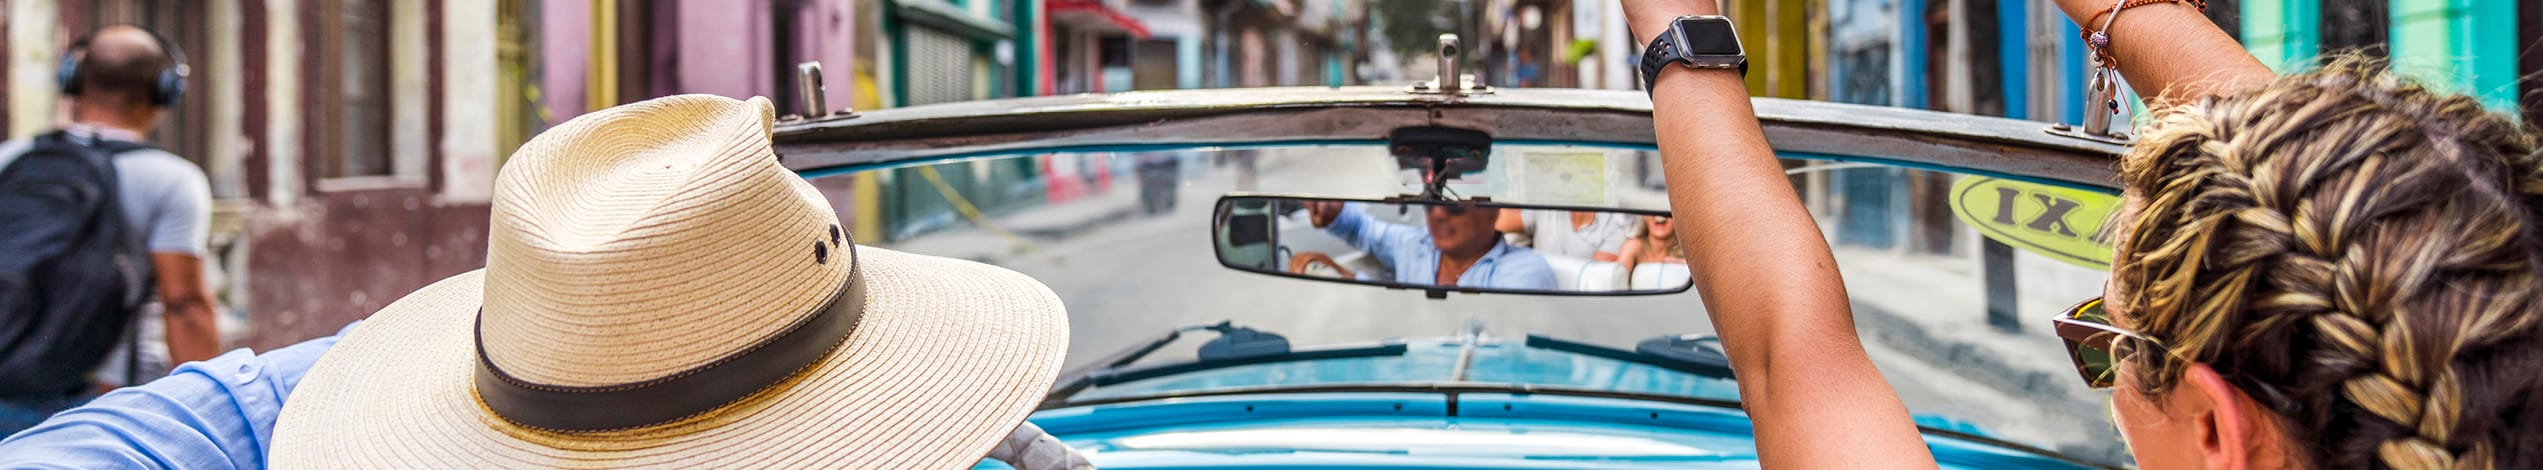 Ung i vintagebil i Havana i Cuba